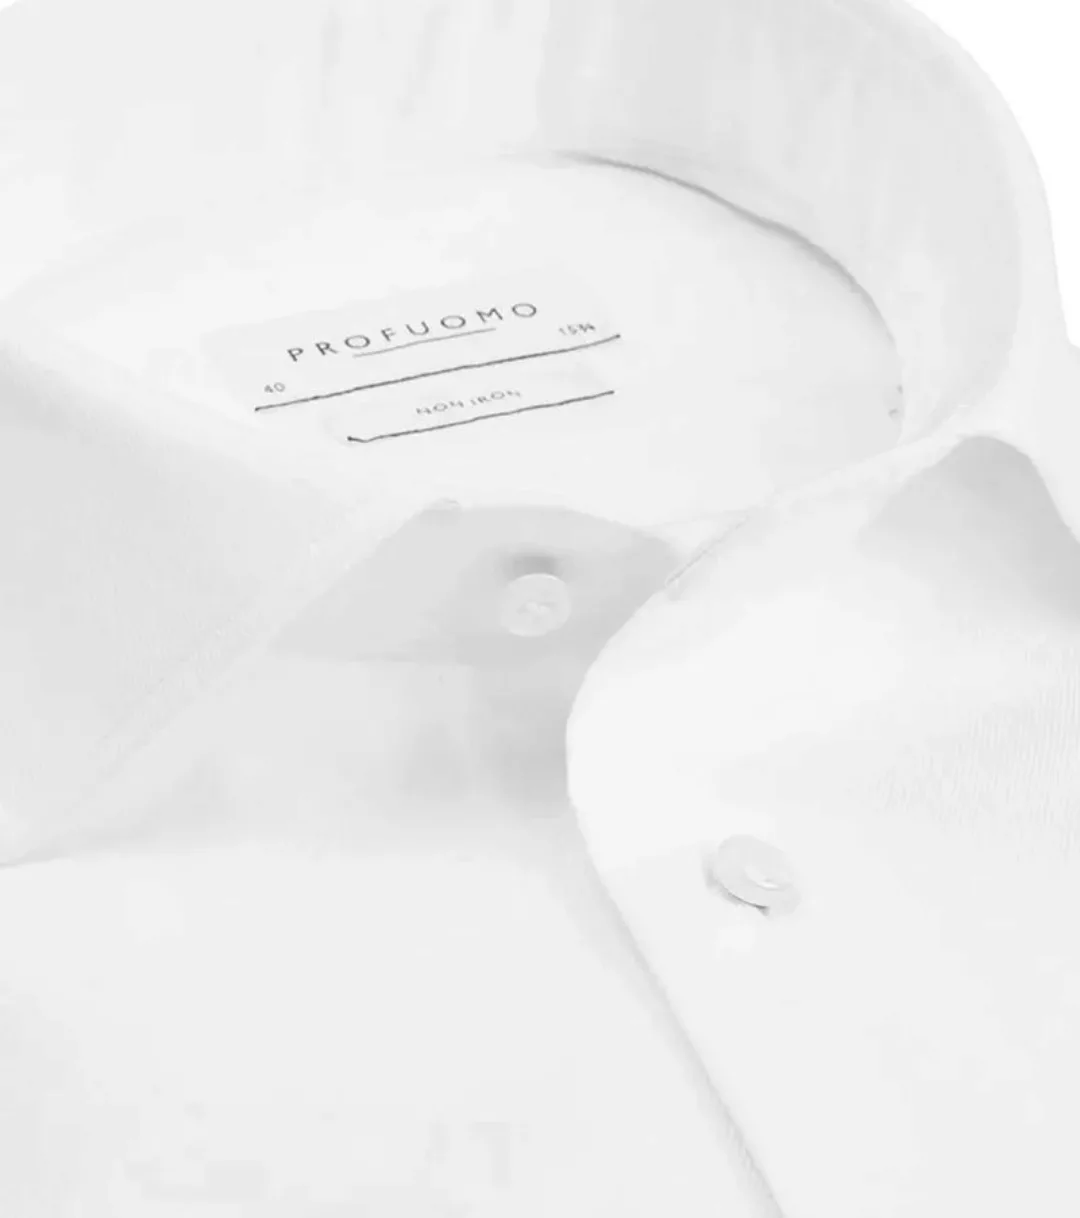 Profuomo Hemd Cutaway Doppel Manschette Weiß - Größe 38 günstig online kaufen